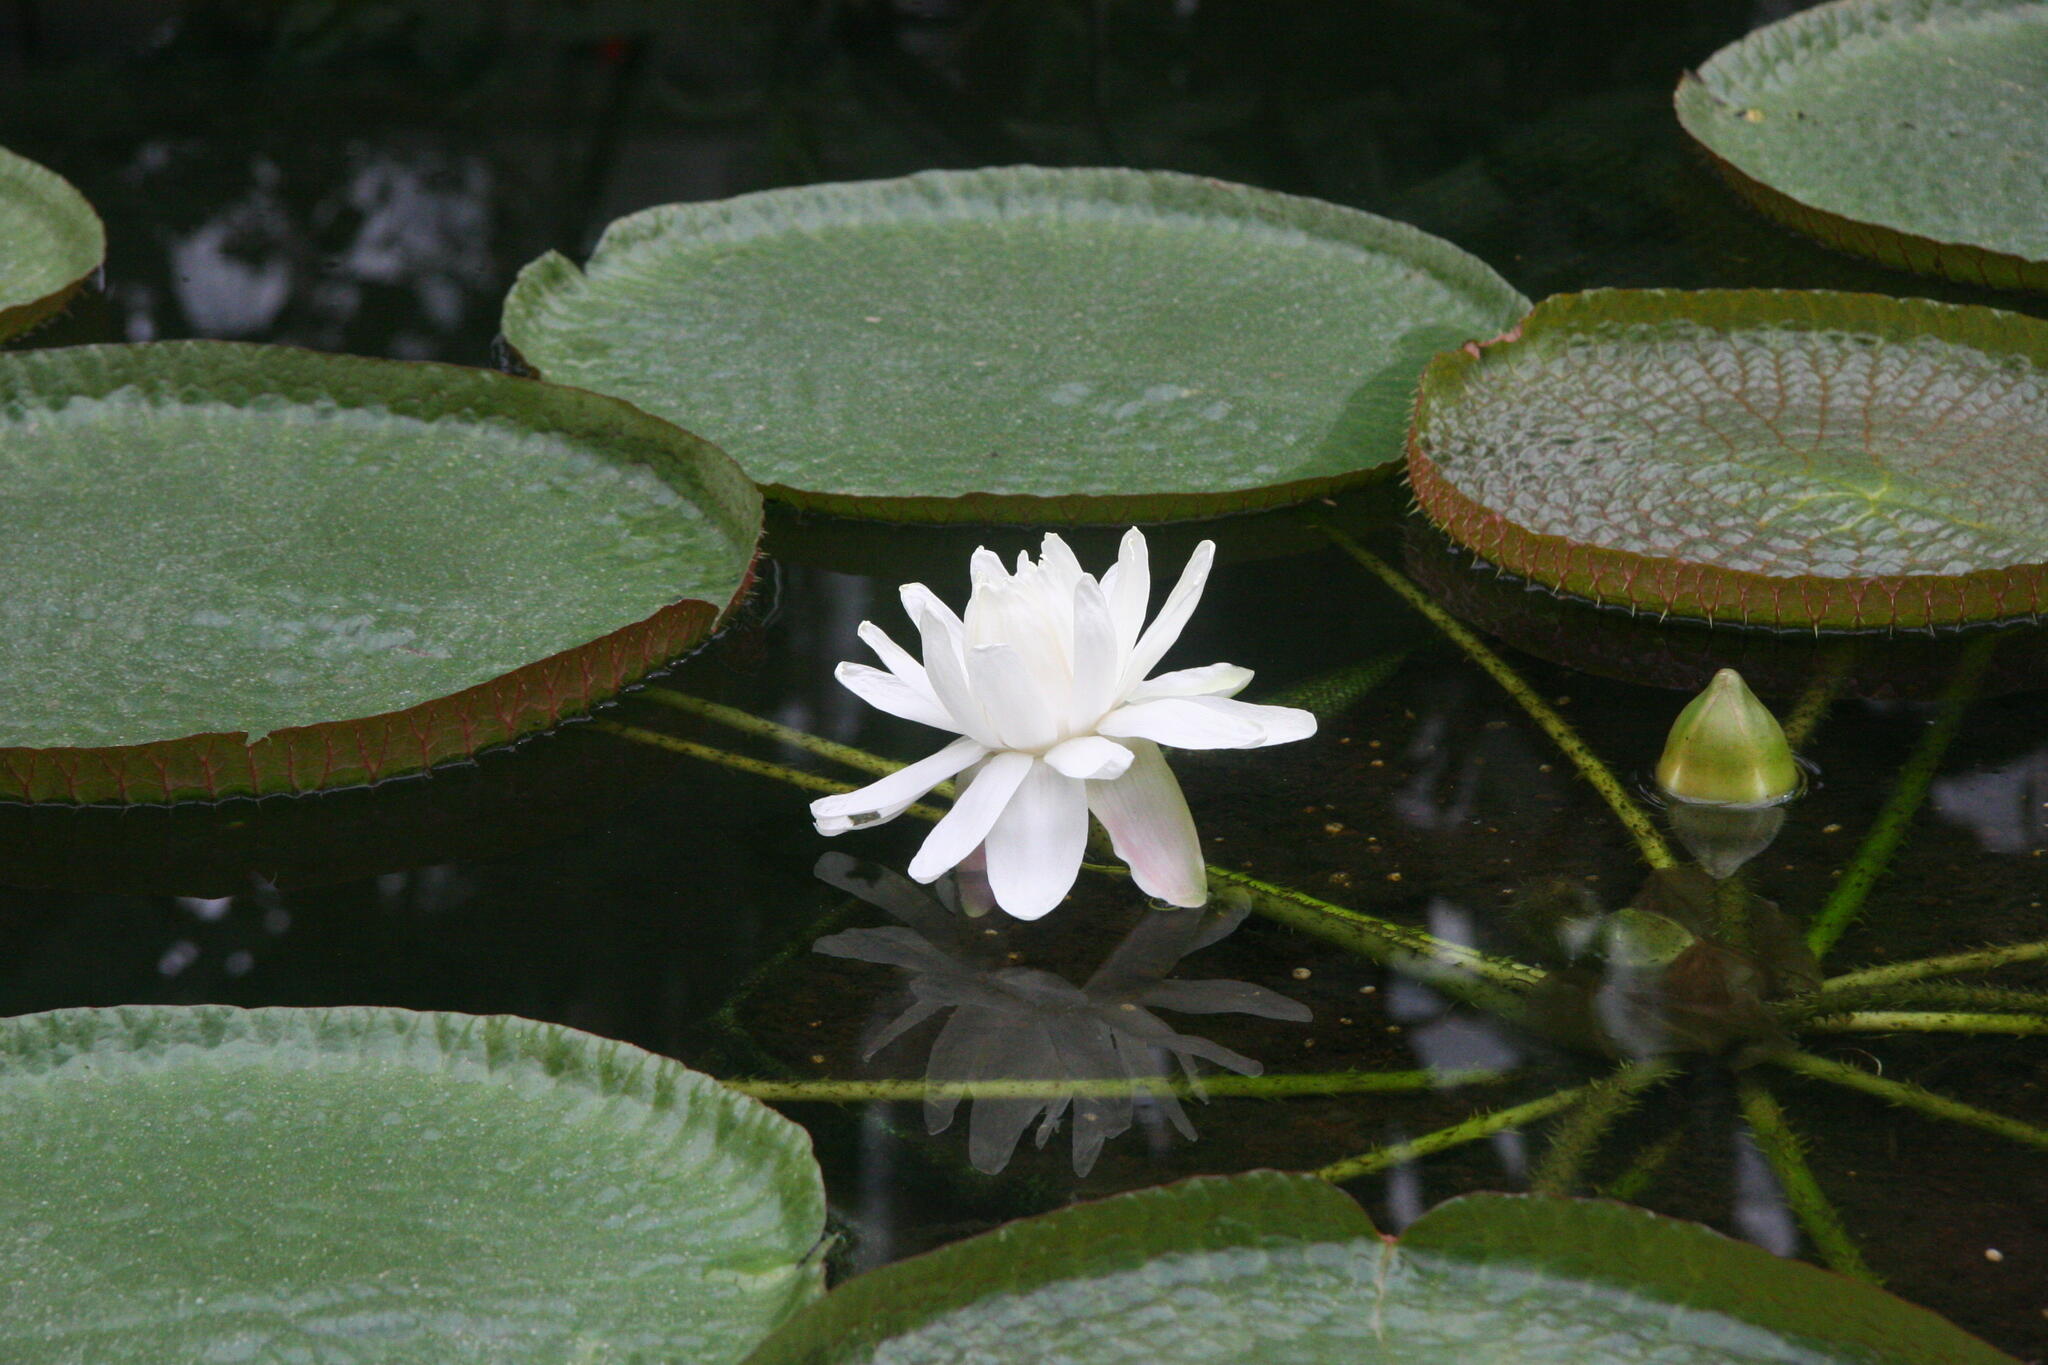 神代植物公園からのお知らせ(パラグアイオニバスが開花)に関する写真